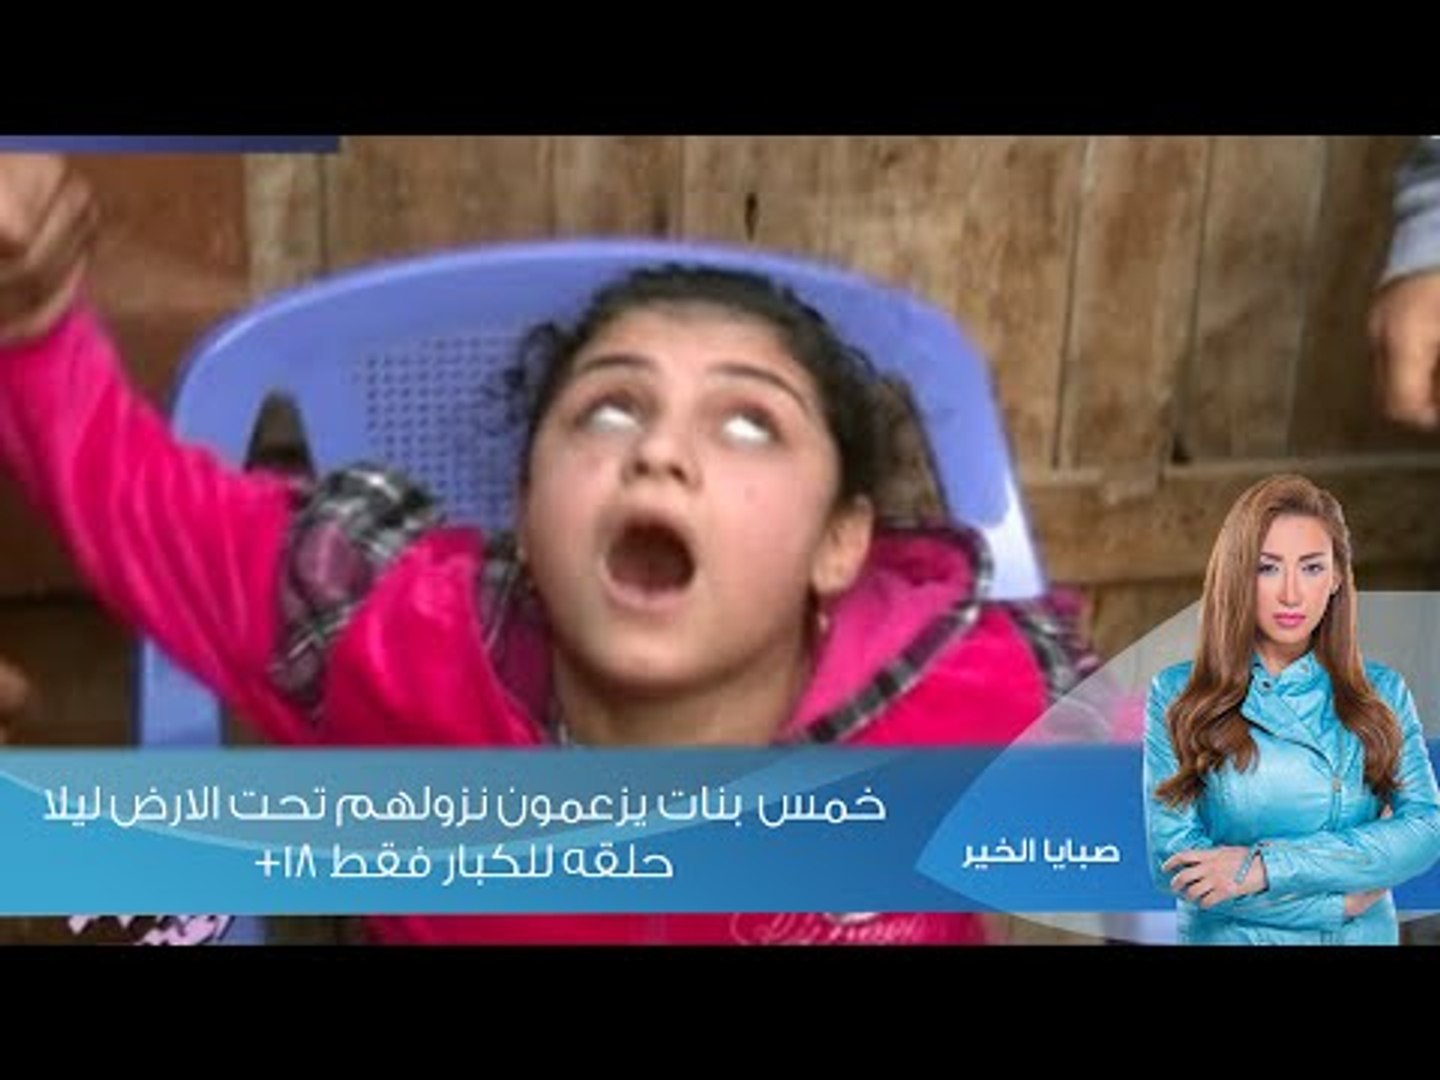 صبايا الخير-ريهام سعيد| خمس بنات يزعمون نزولهم تحت الارض ليلا (حلقه للكبار  فقط +18) - فيديو Dailymotion